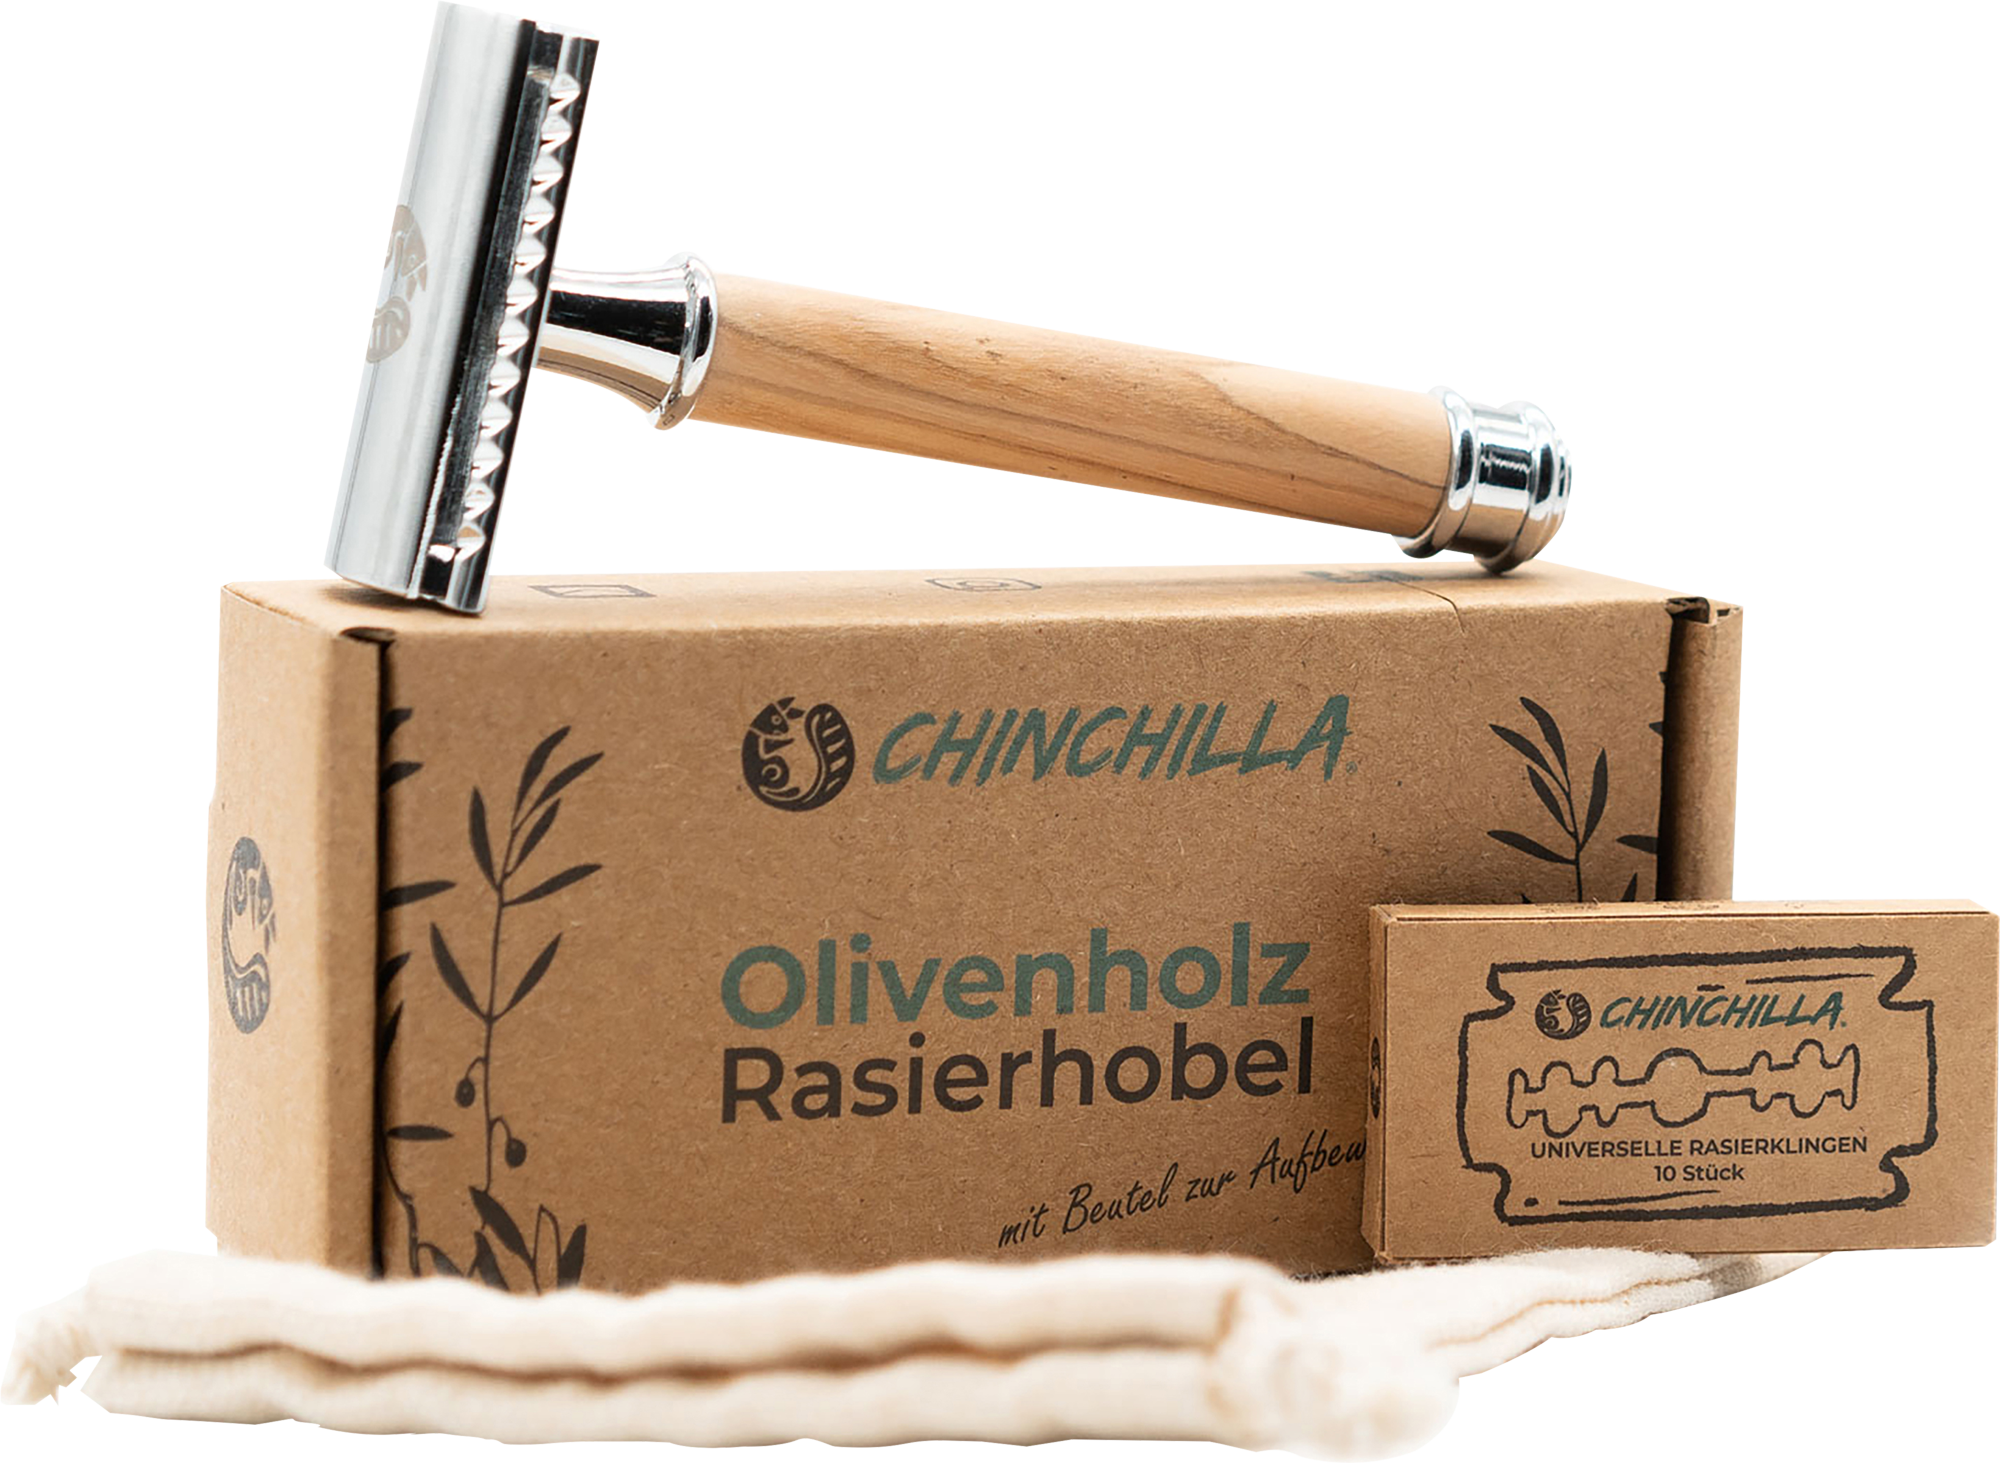 Chinchilla Rasierhobel inklusive 10 Rasierklingen und Baumwollbeutel